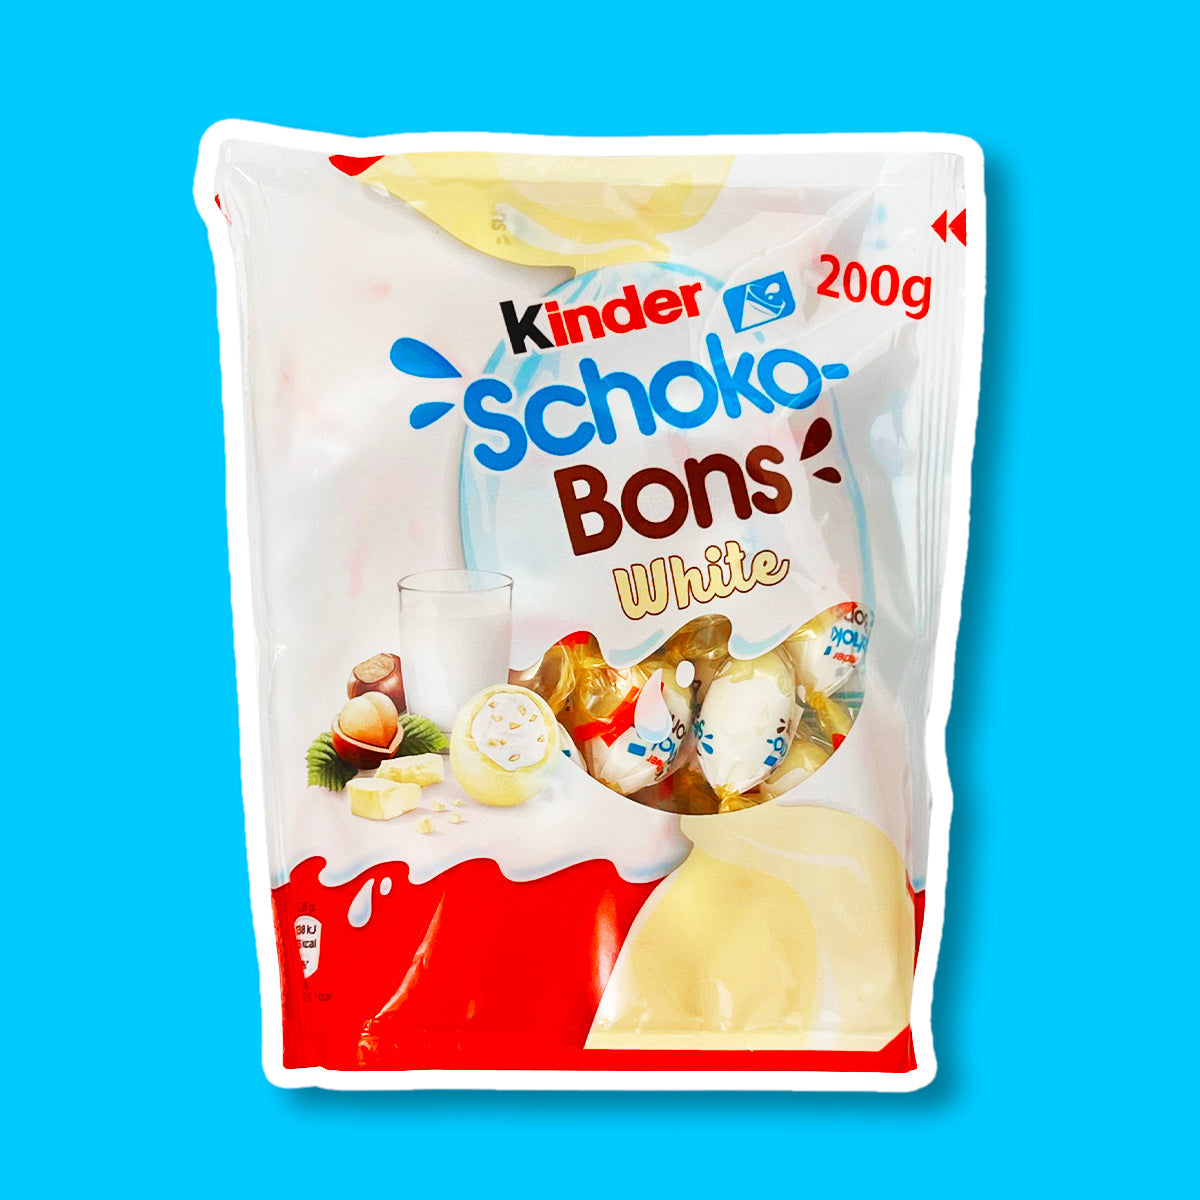 Kinder Choco-Bons blancs (200g) acheter à prix réduit